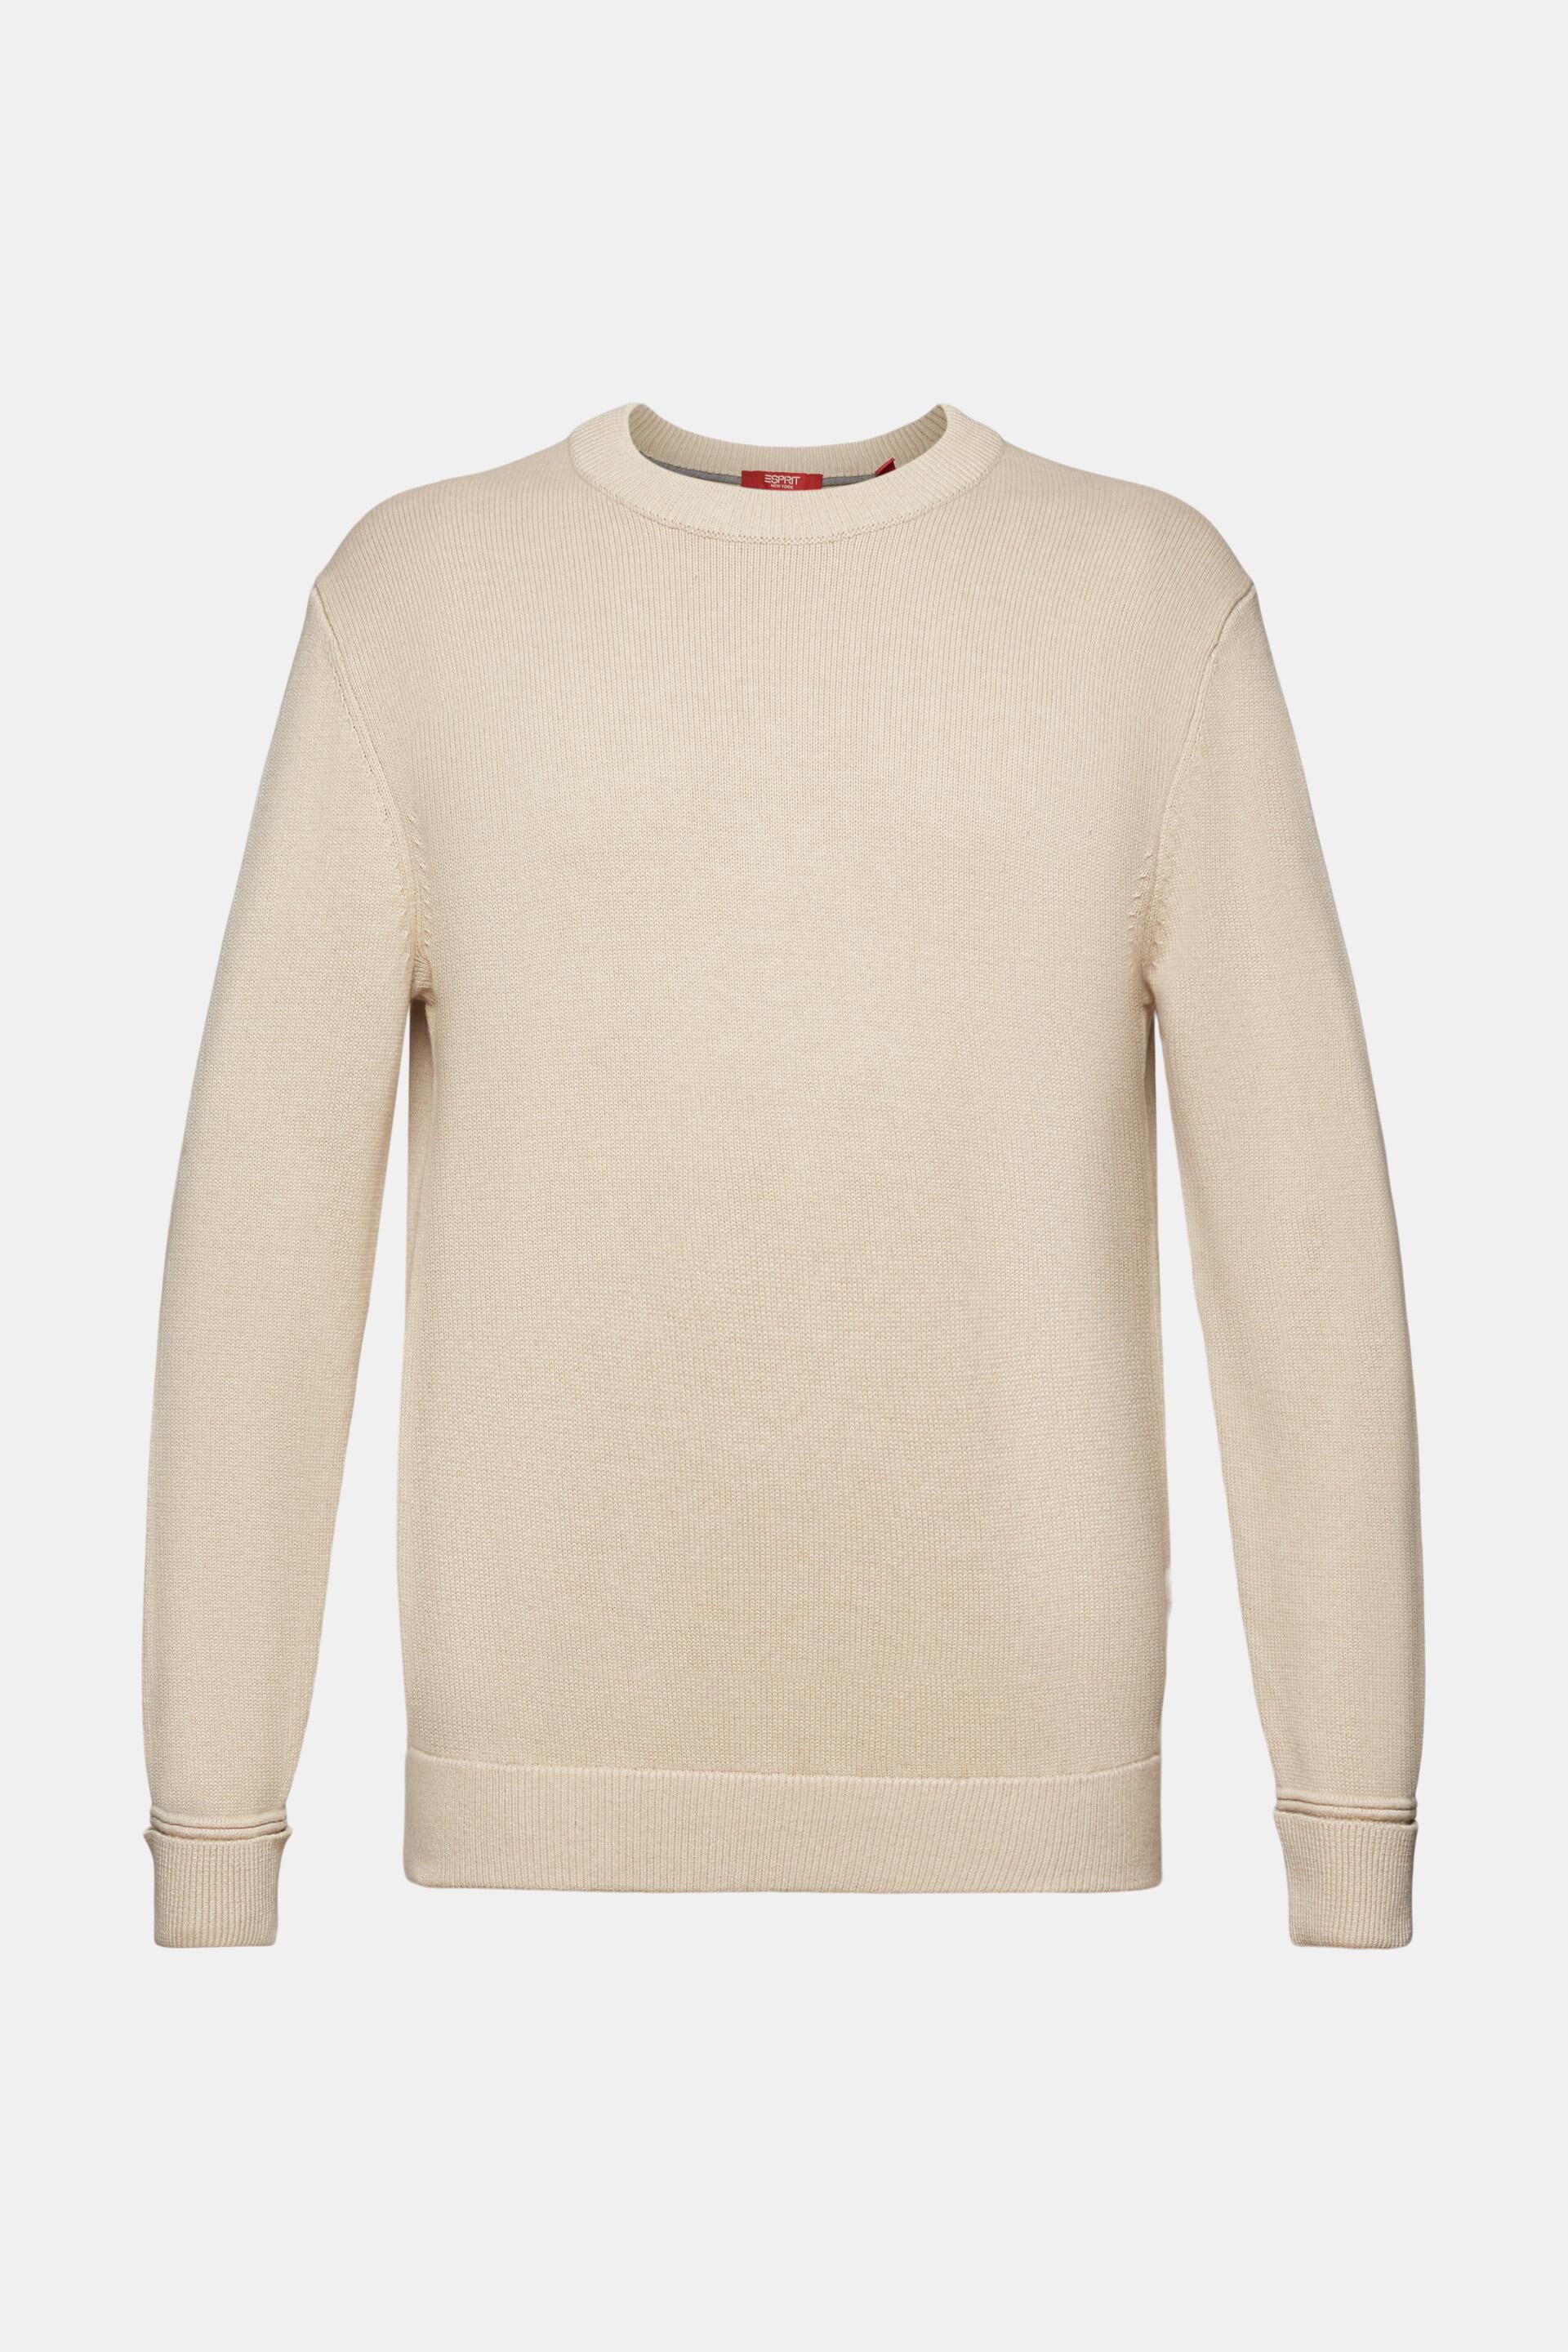 ESPRIT - Cotton Crewneck Sweater at our online shop